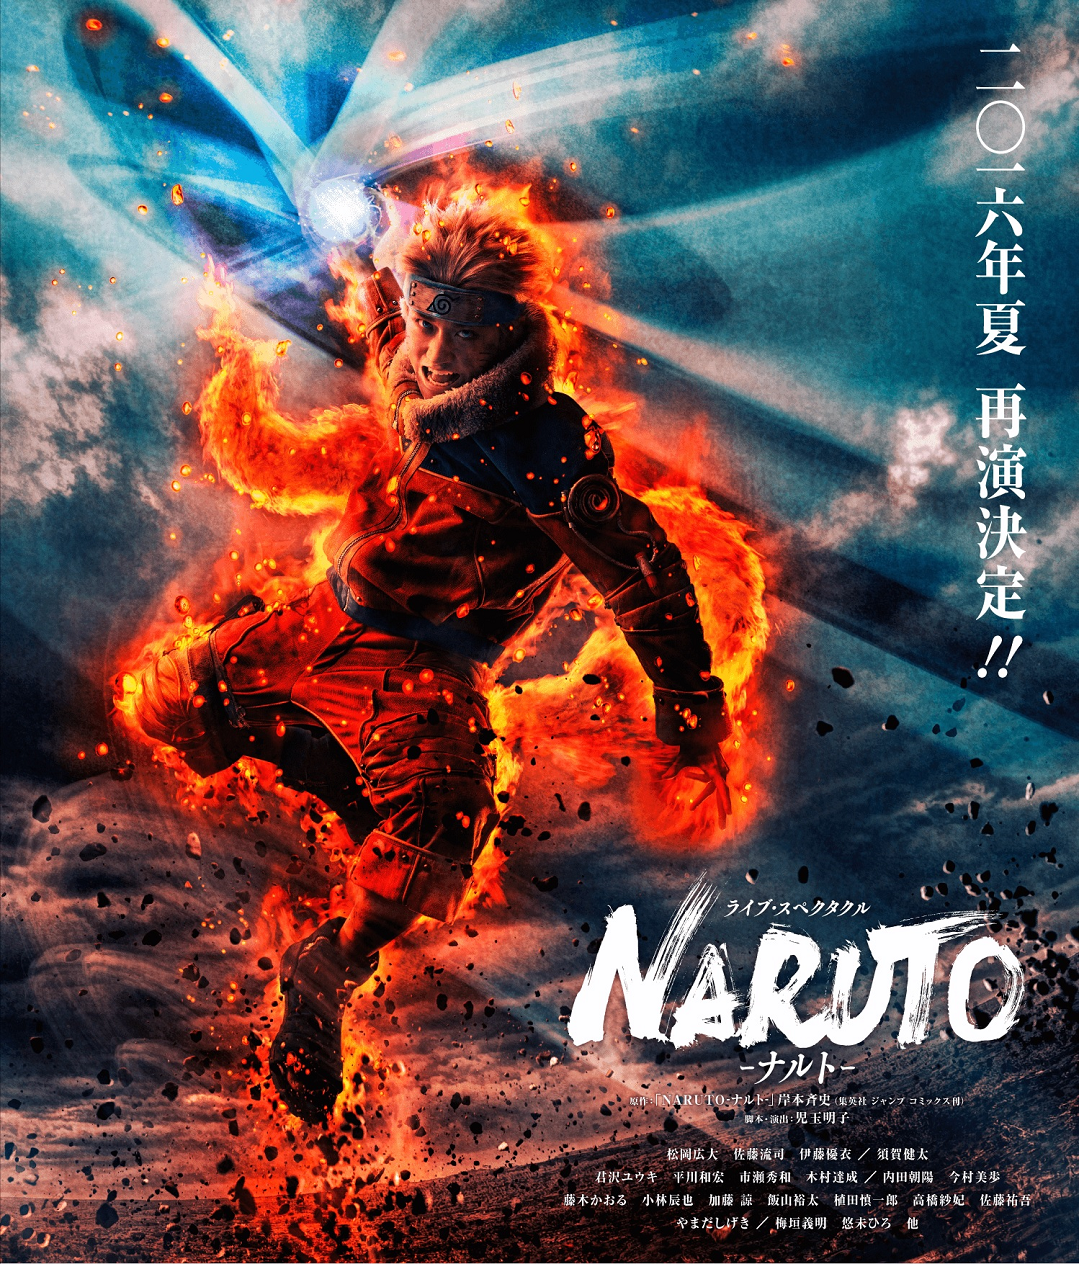 Naruto 再演 新画像とキャスト情報公開 すみれ咲く国へようこそ Livedoor版